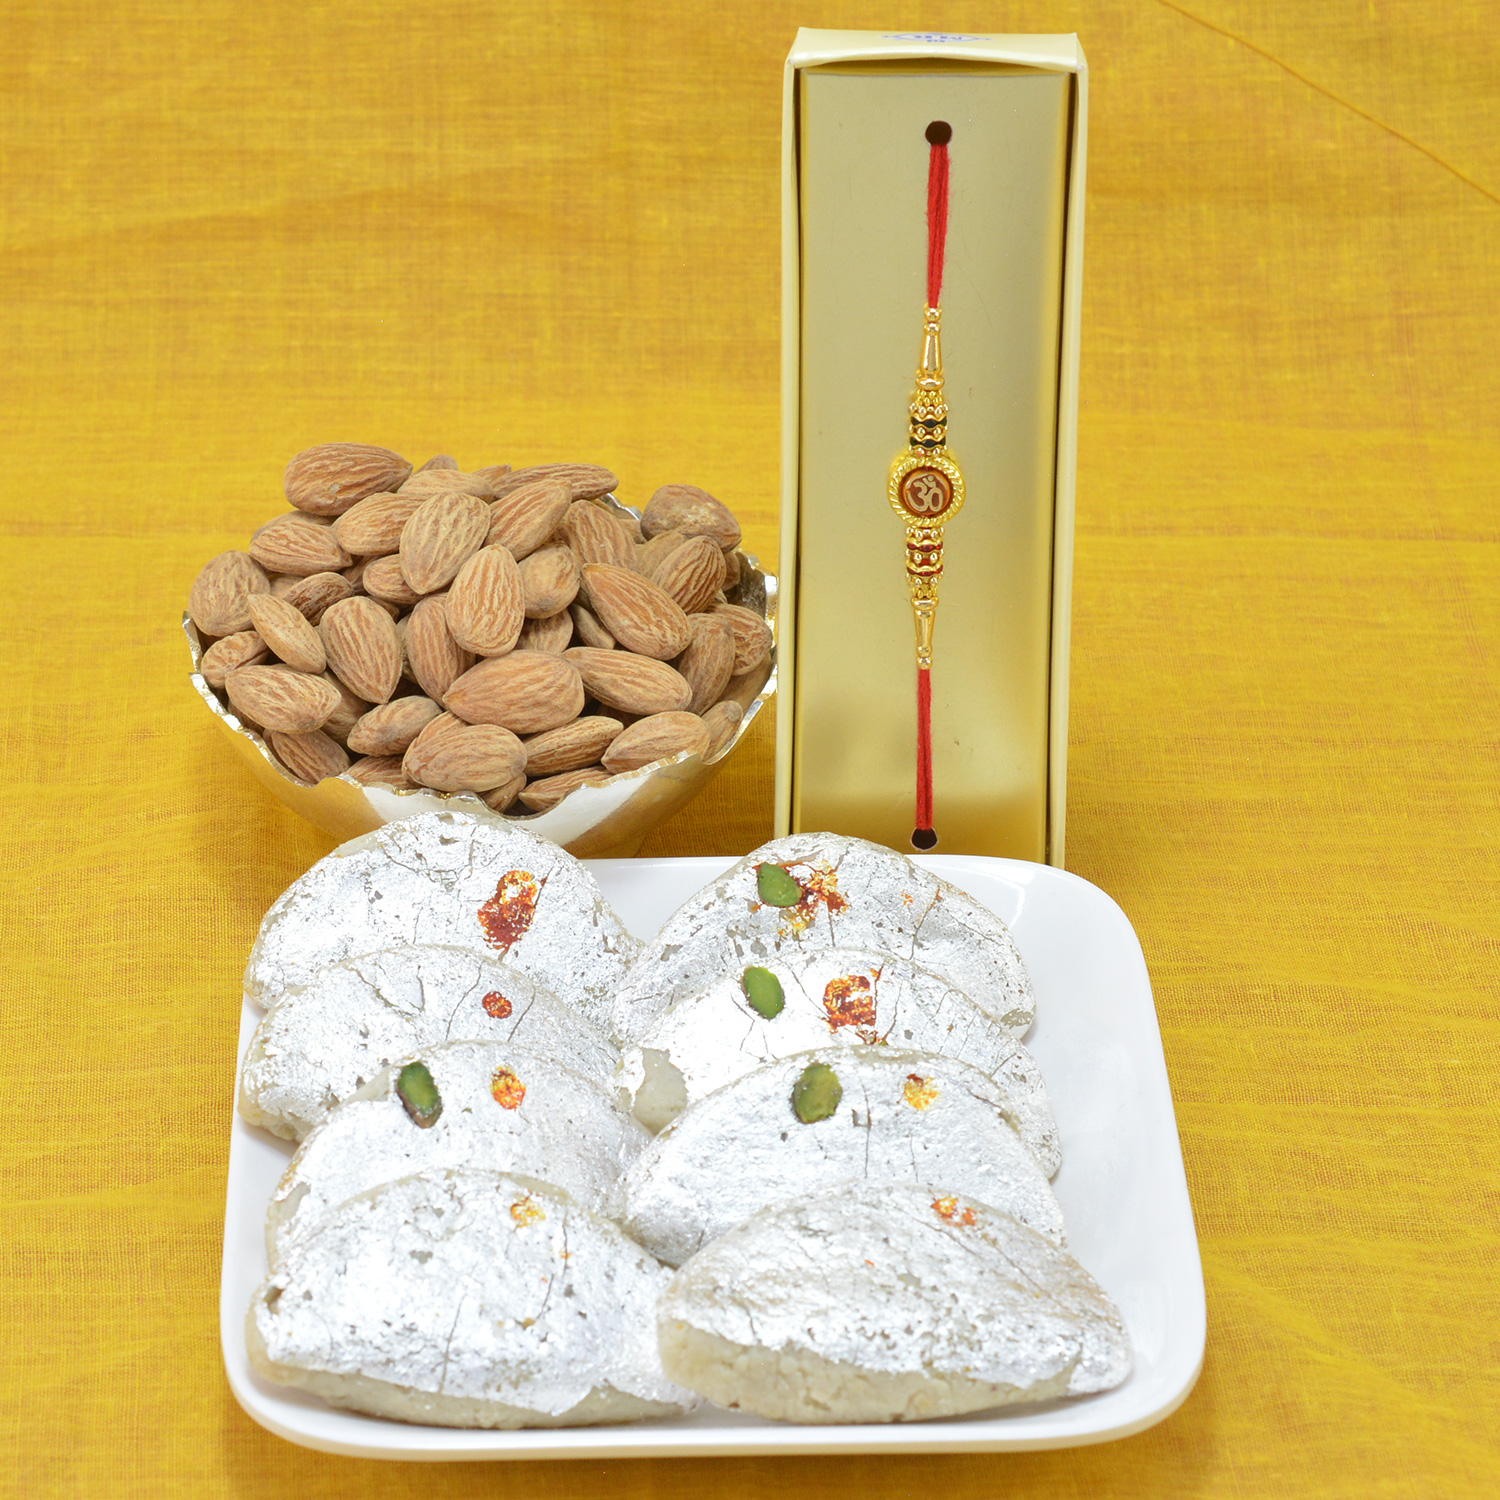 Superb Divine OM Rakhi with Flavorsome Kaju Gujia along with Tasteful Almond Dry Fruit Hamper